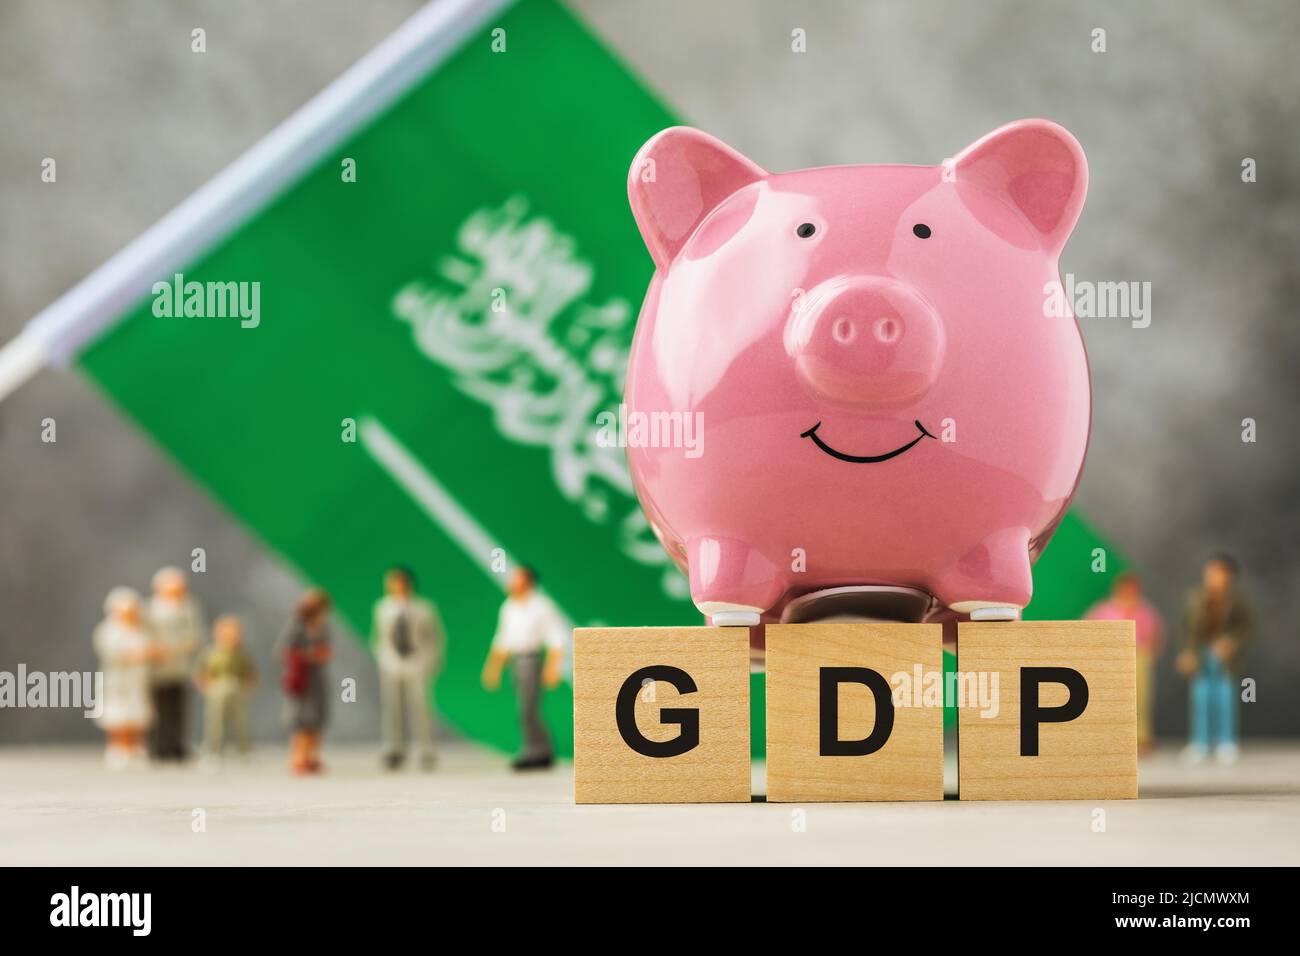 Banco de lechujas, cubos de madera con texto, juguetes hechos de plástico y una bandera sobre un fondo abstracto, un concepto sobre el tema del PIB de Arabia Saudita Foto de stock